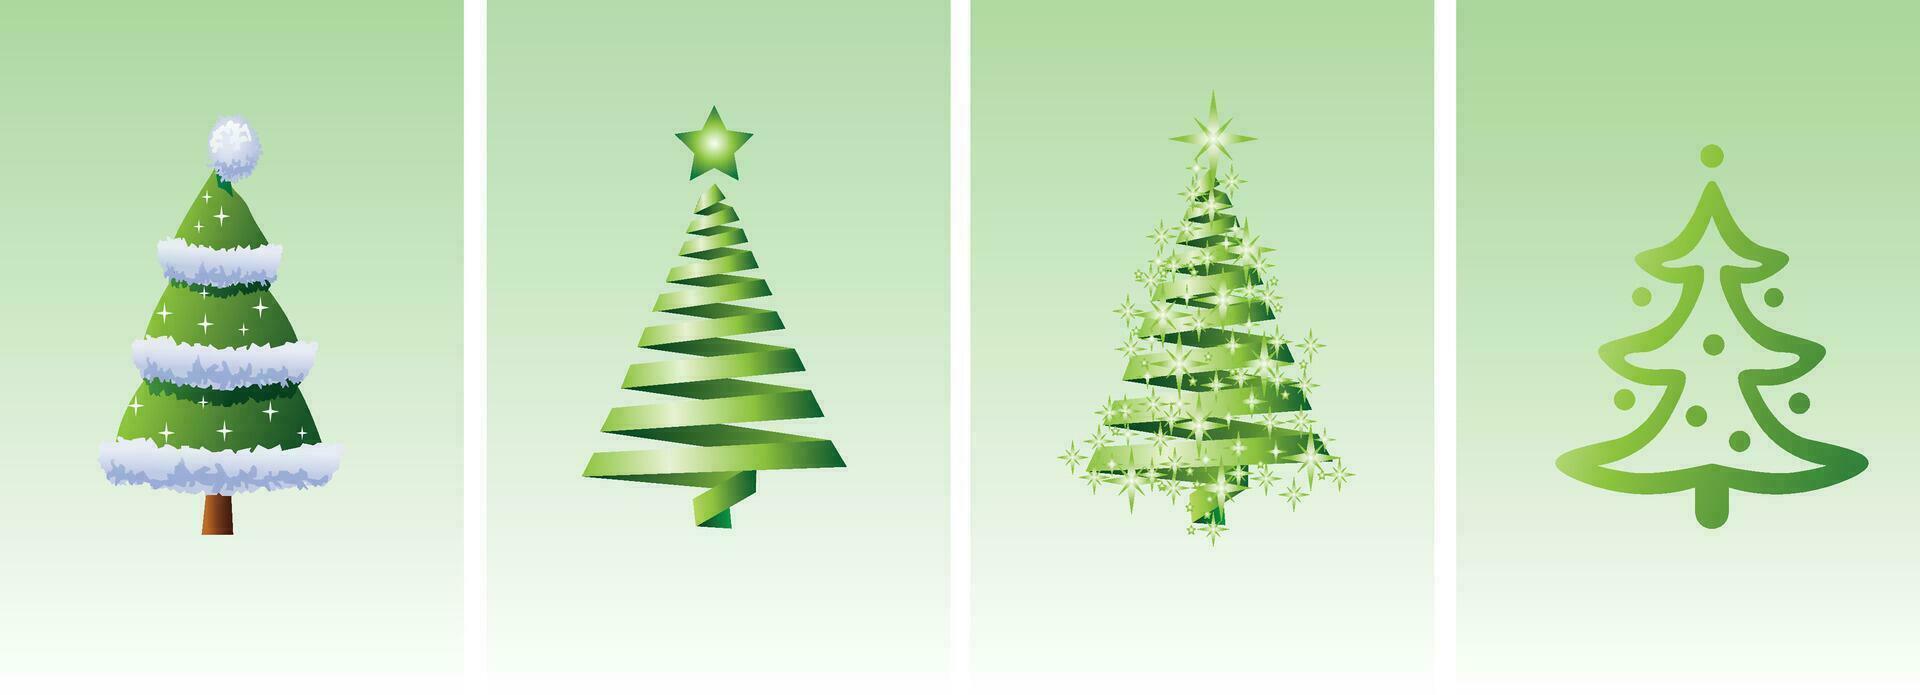 Sammlung von Grün Weihnachten Bäume mit Sterne. Weihnachten Baum Vektor 3d Illustration. auf ein Grün Hintergrund